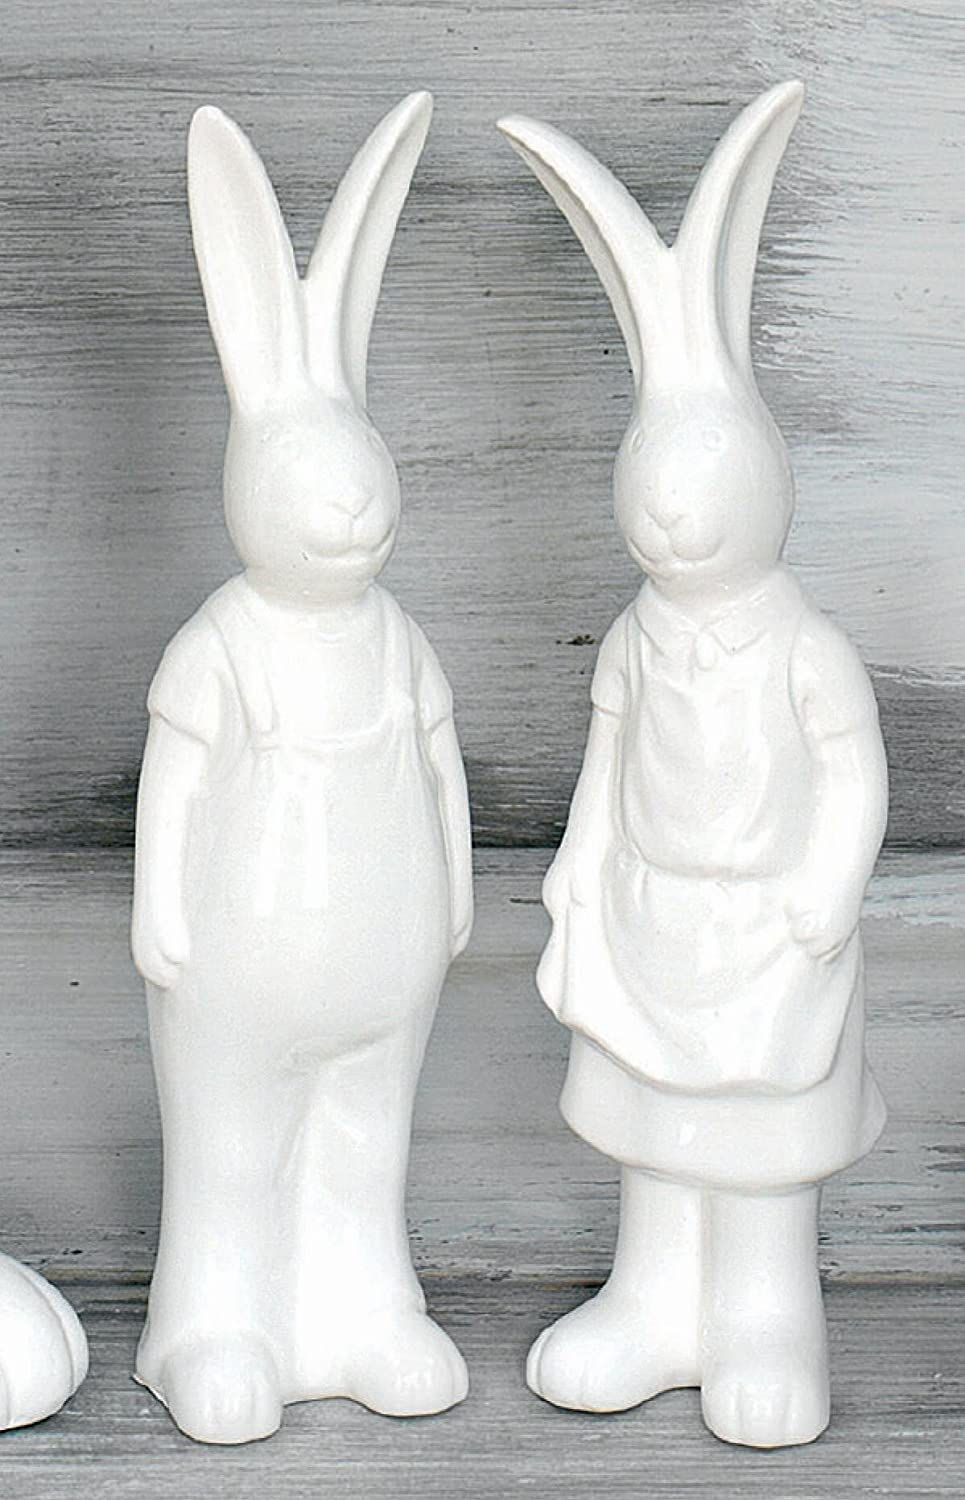 Pair of rabbits "Classico"